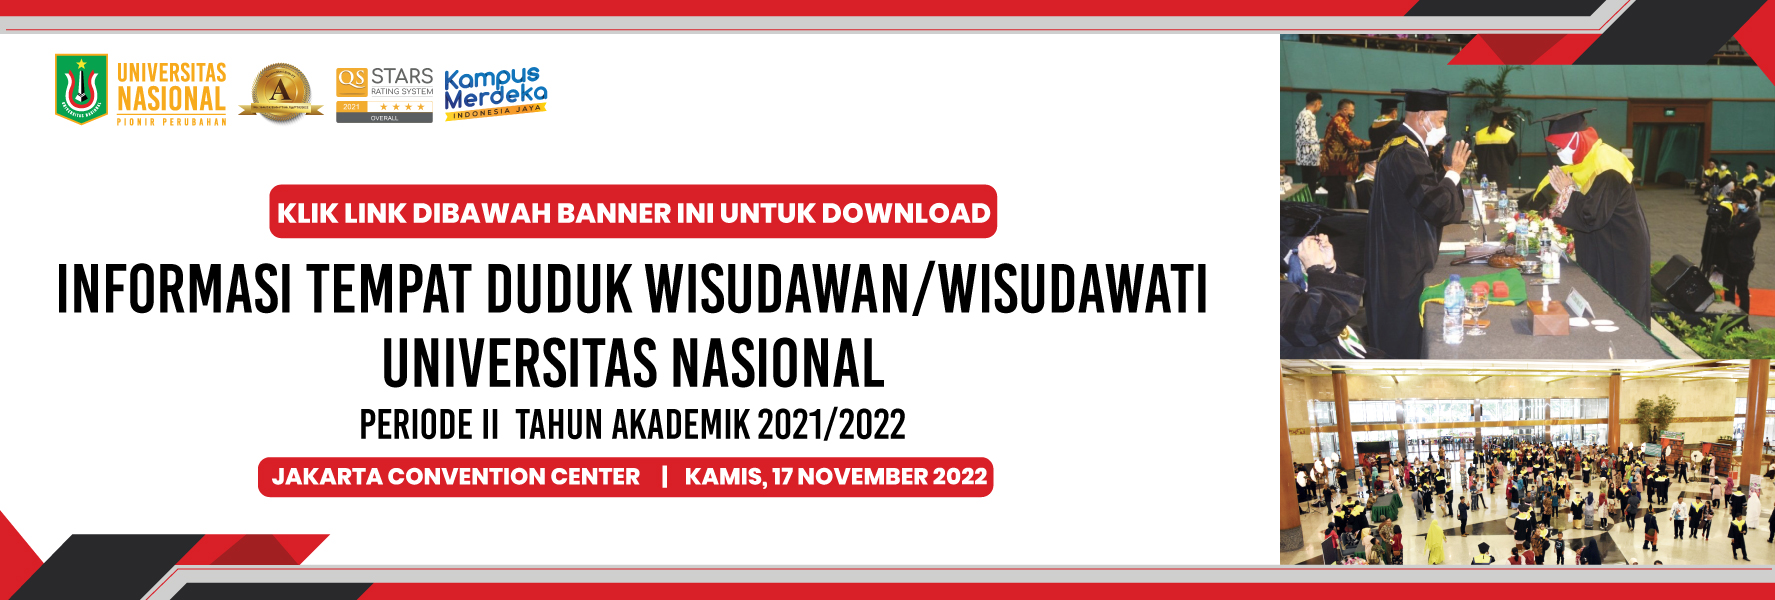 Web-banner-Info-Tempat-Duduk-Wisudawan-Periode-II-T-A-2021-2022